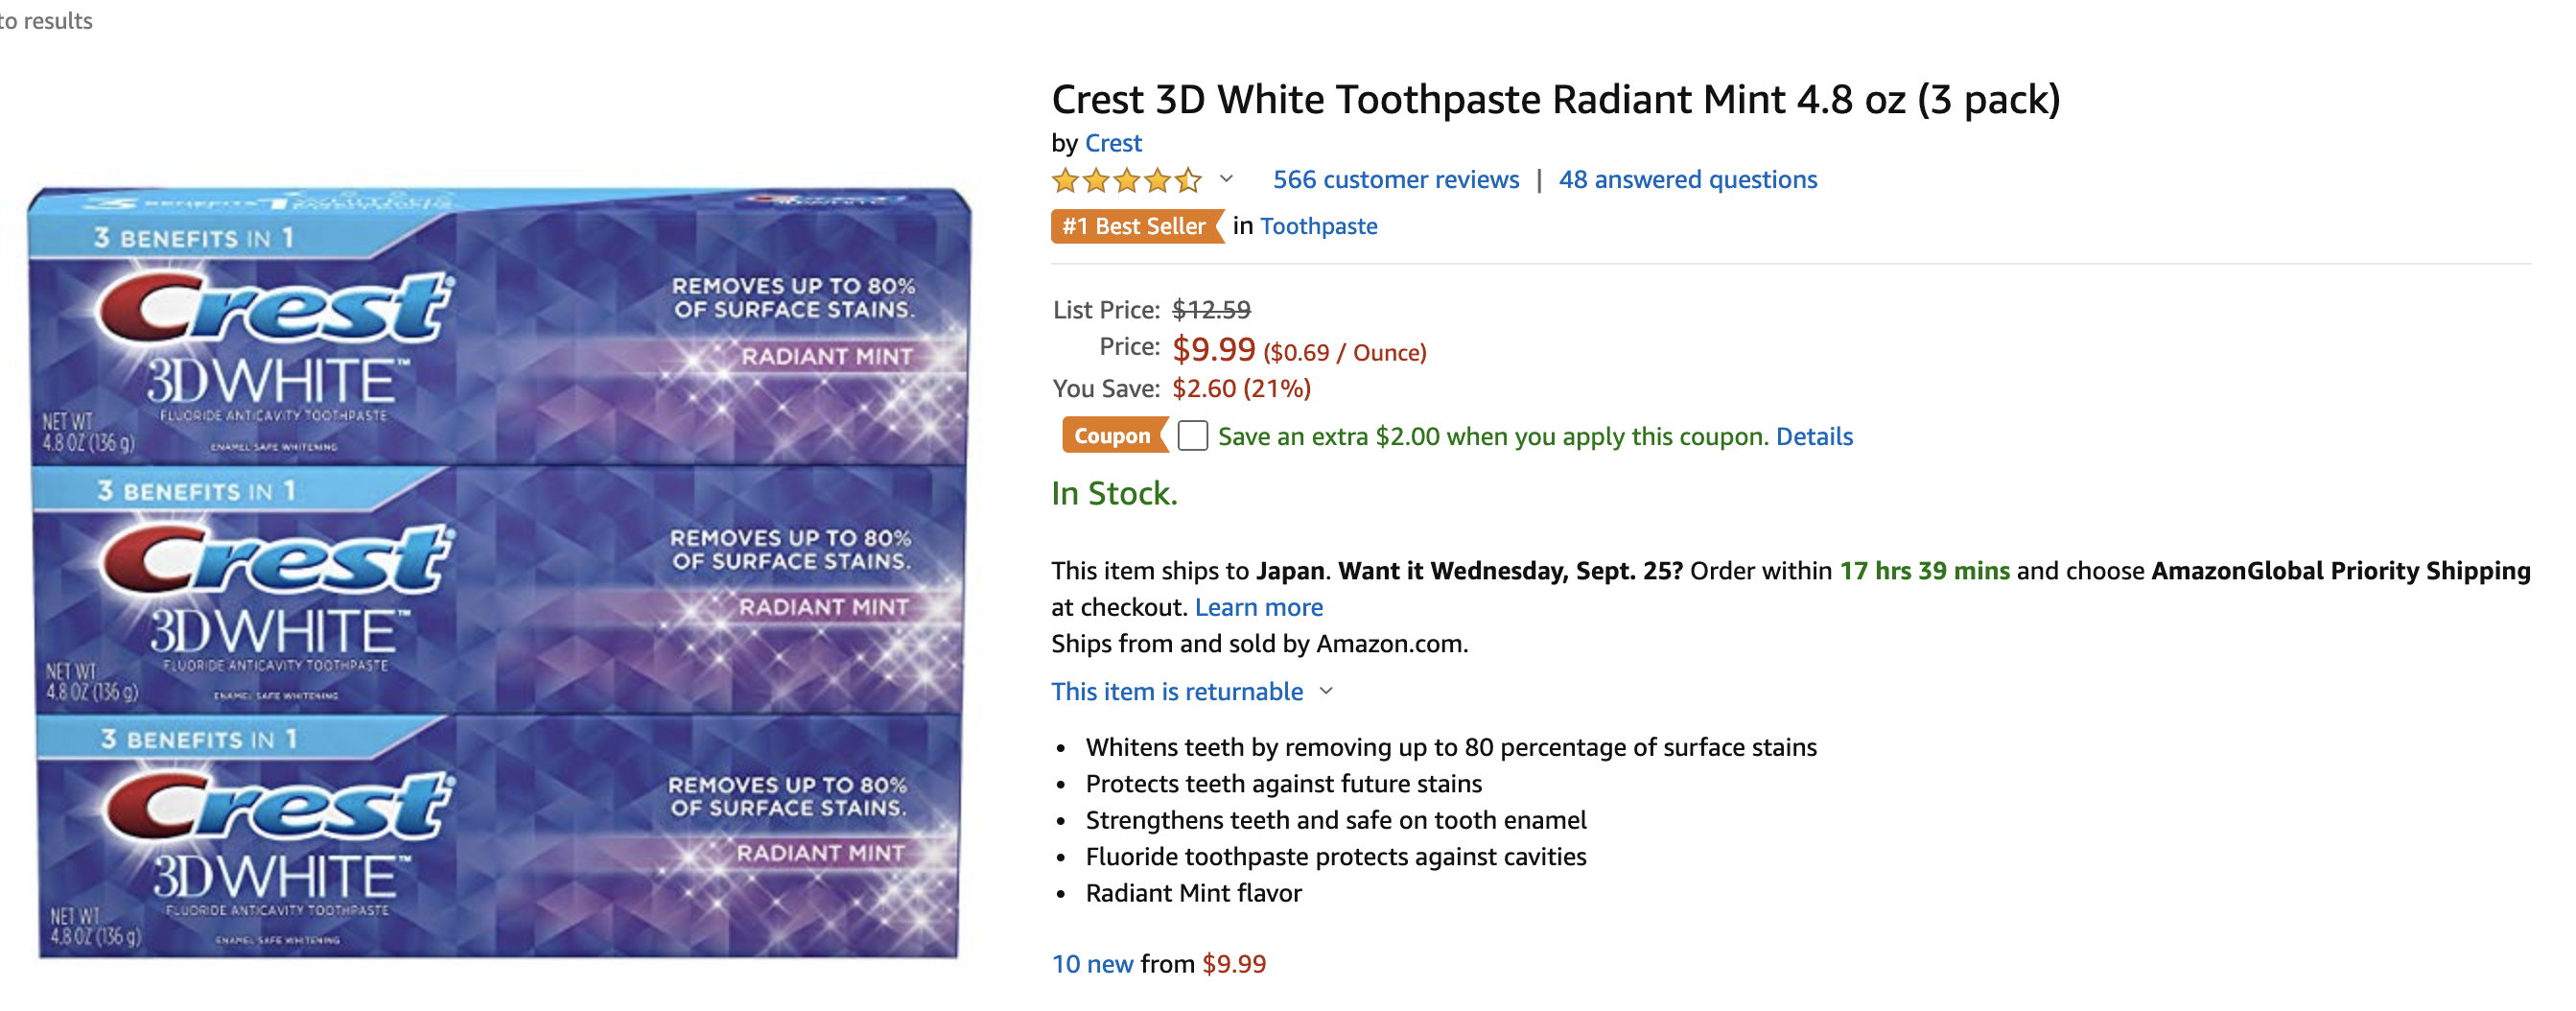 Crest 3d Whiteはどこで買えるの 最安値は 歯が見違えるほど白くなるとtwitterで話題のホワイトニング歯磨き粉 アラフォーママのコスメ口コミブログ